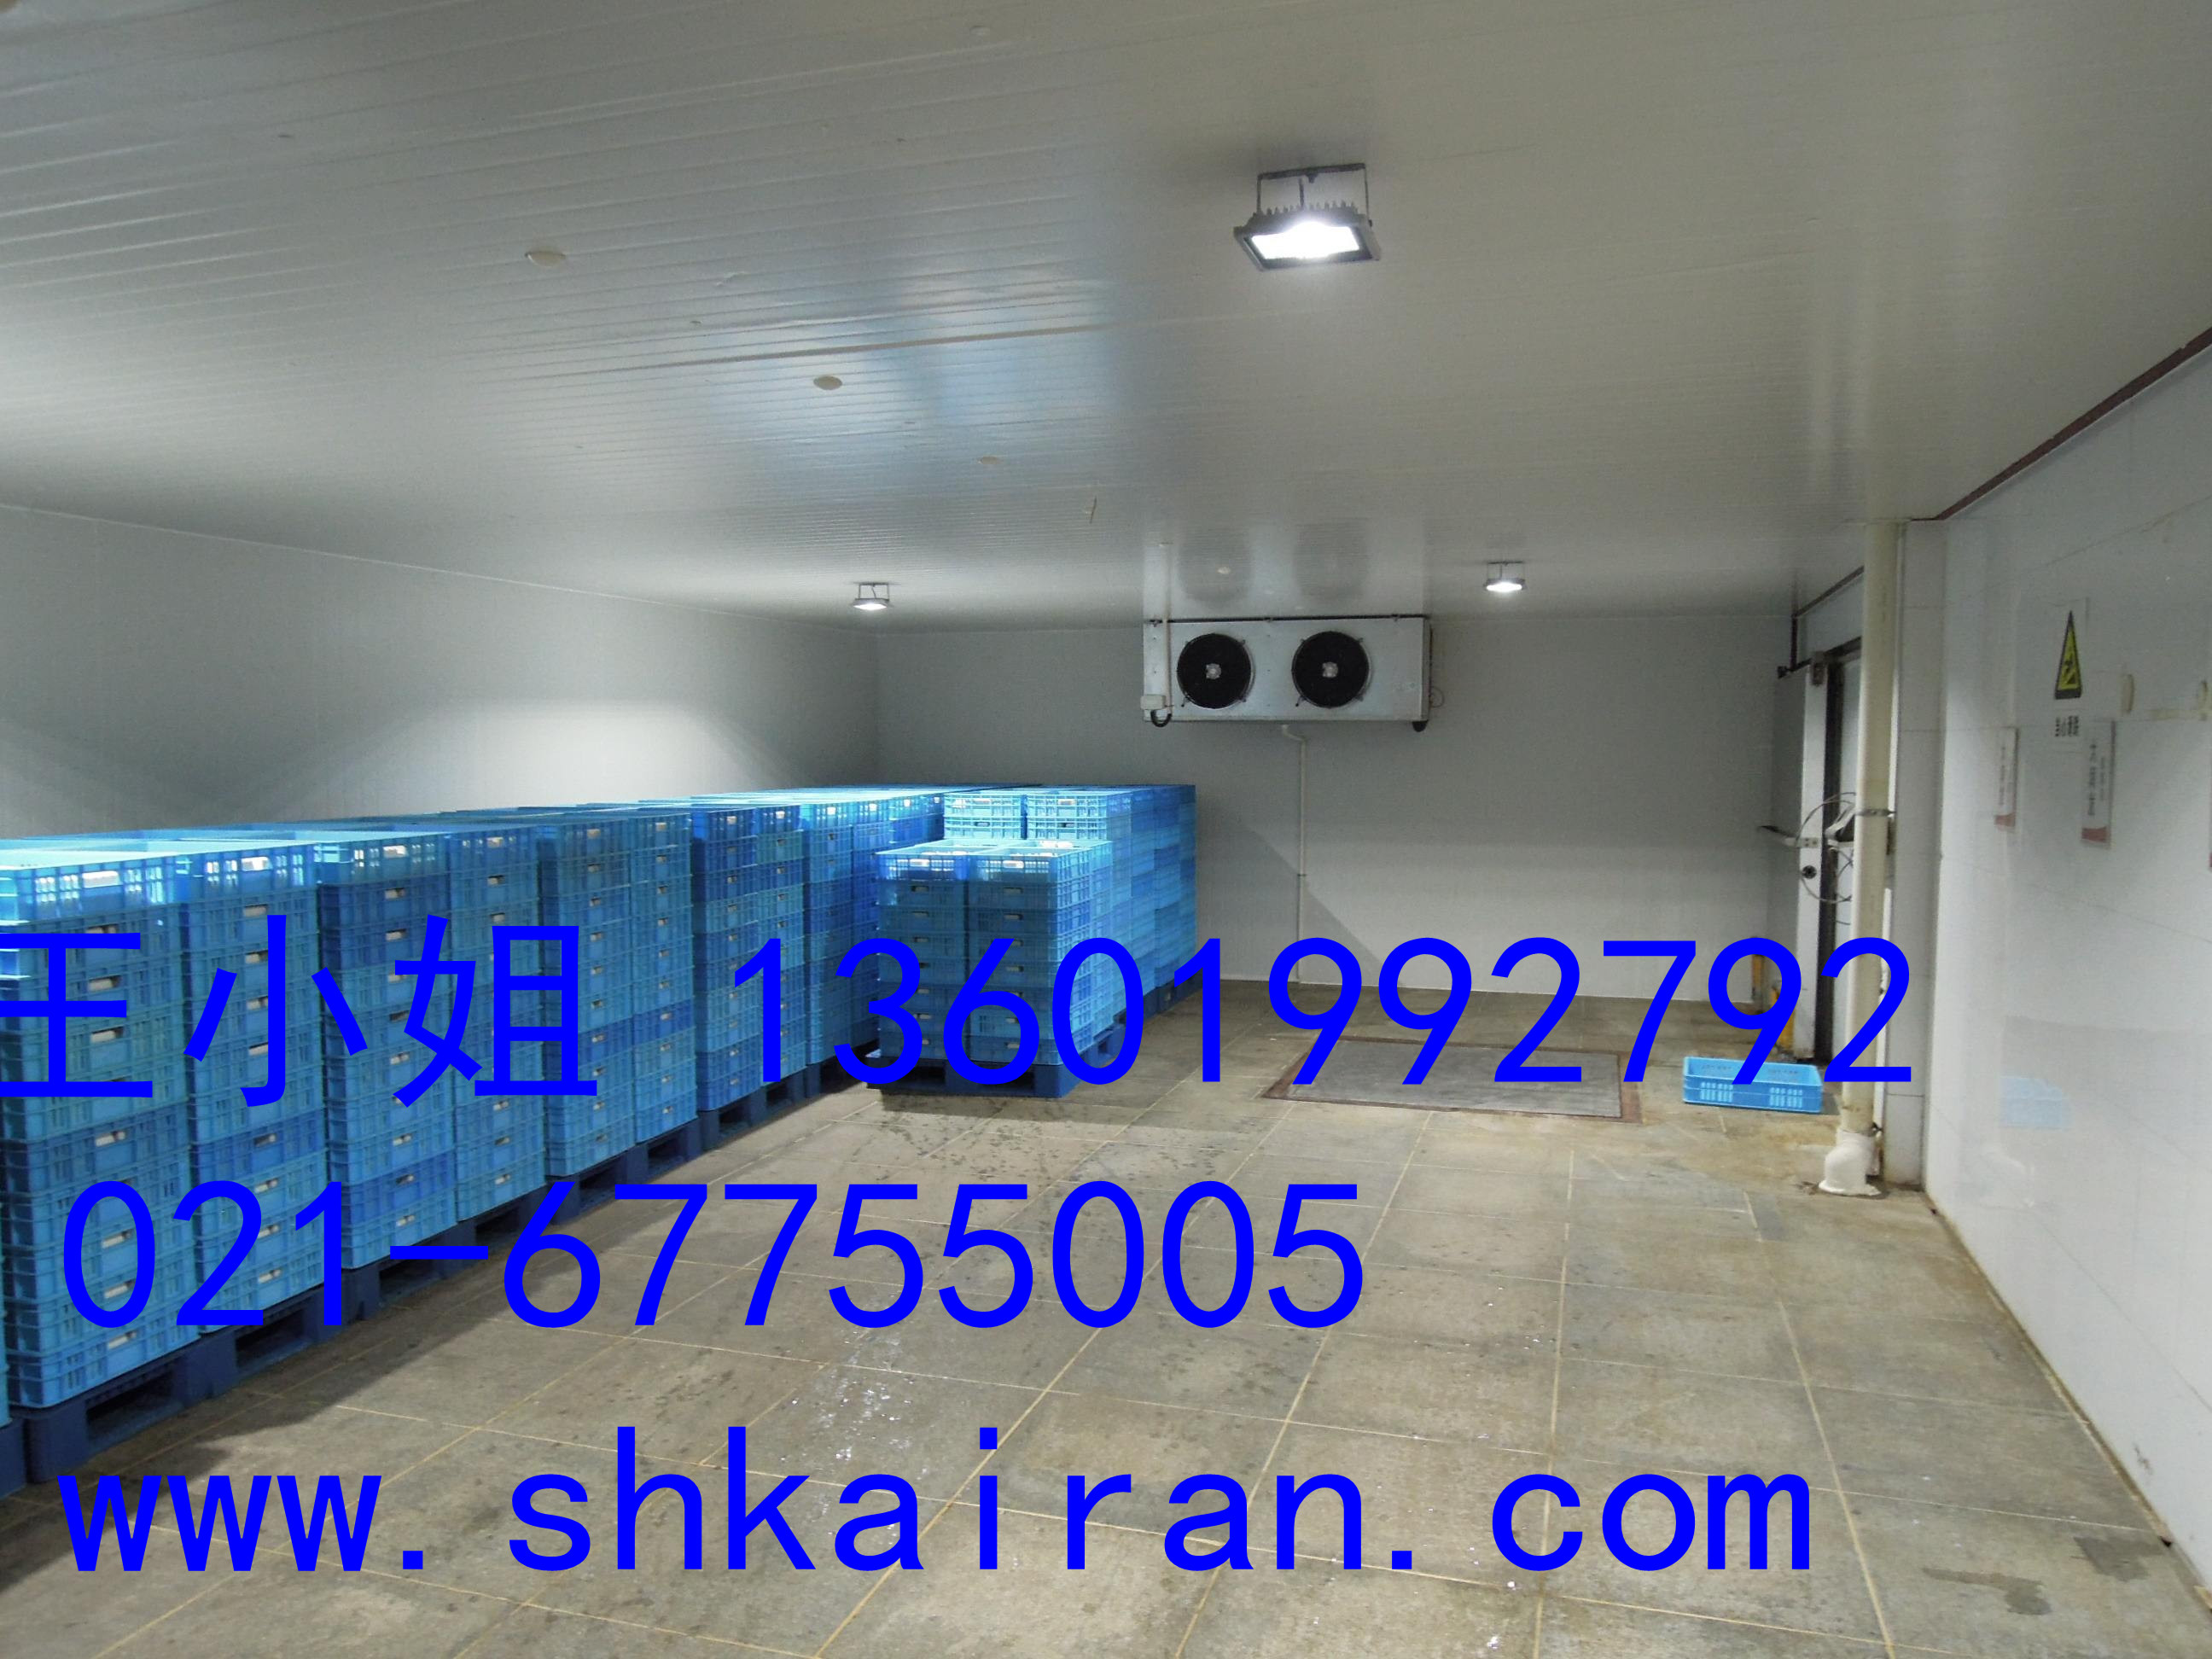 上海市小型冷库安装厂家